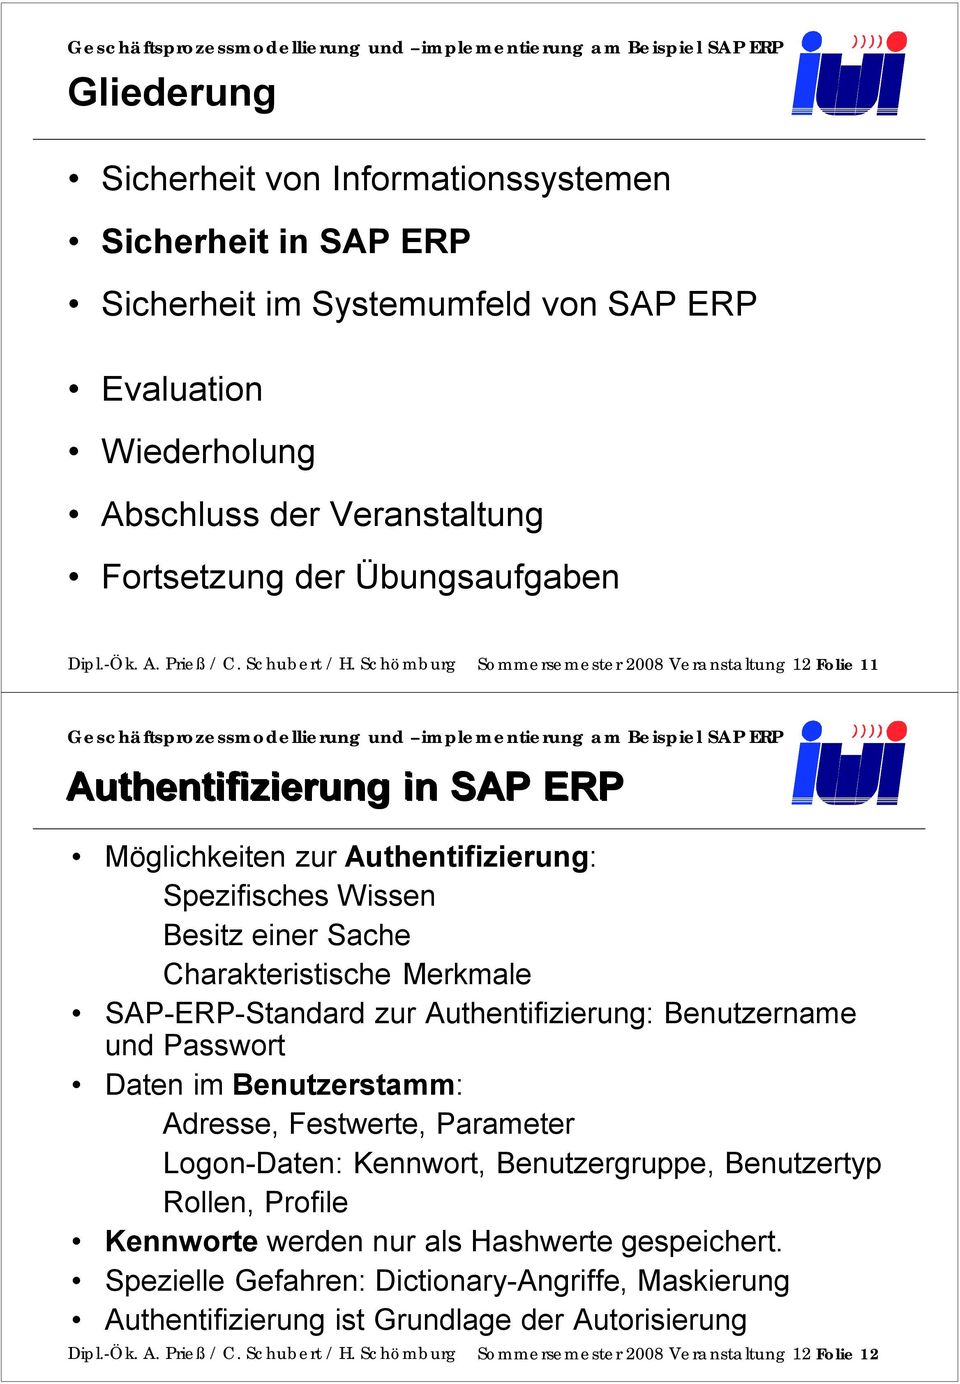 Schömburg Sommersemester 2008 Veranstaltung 12 Folie 11 Authentifizierung in SAP ERP Möglichkeiten zur Authentifizierung: Spezifisches Wissen Besitz einer Sache Charakteristische Merkmale